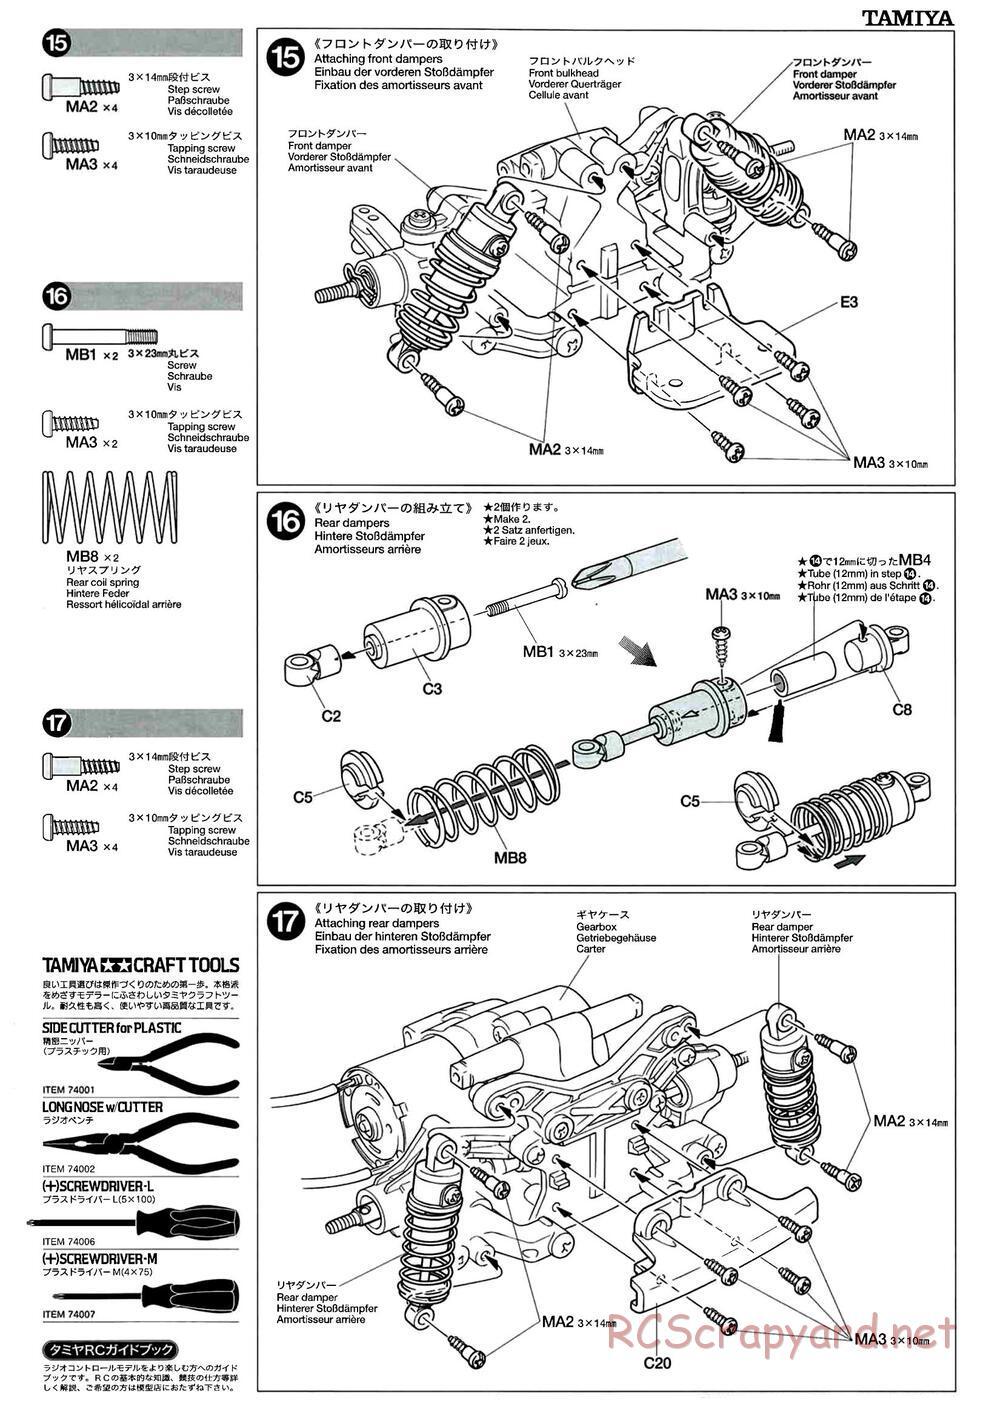 Tamiya - M-04L Chassis - Manual - Page 9